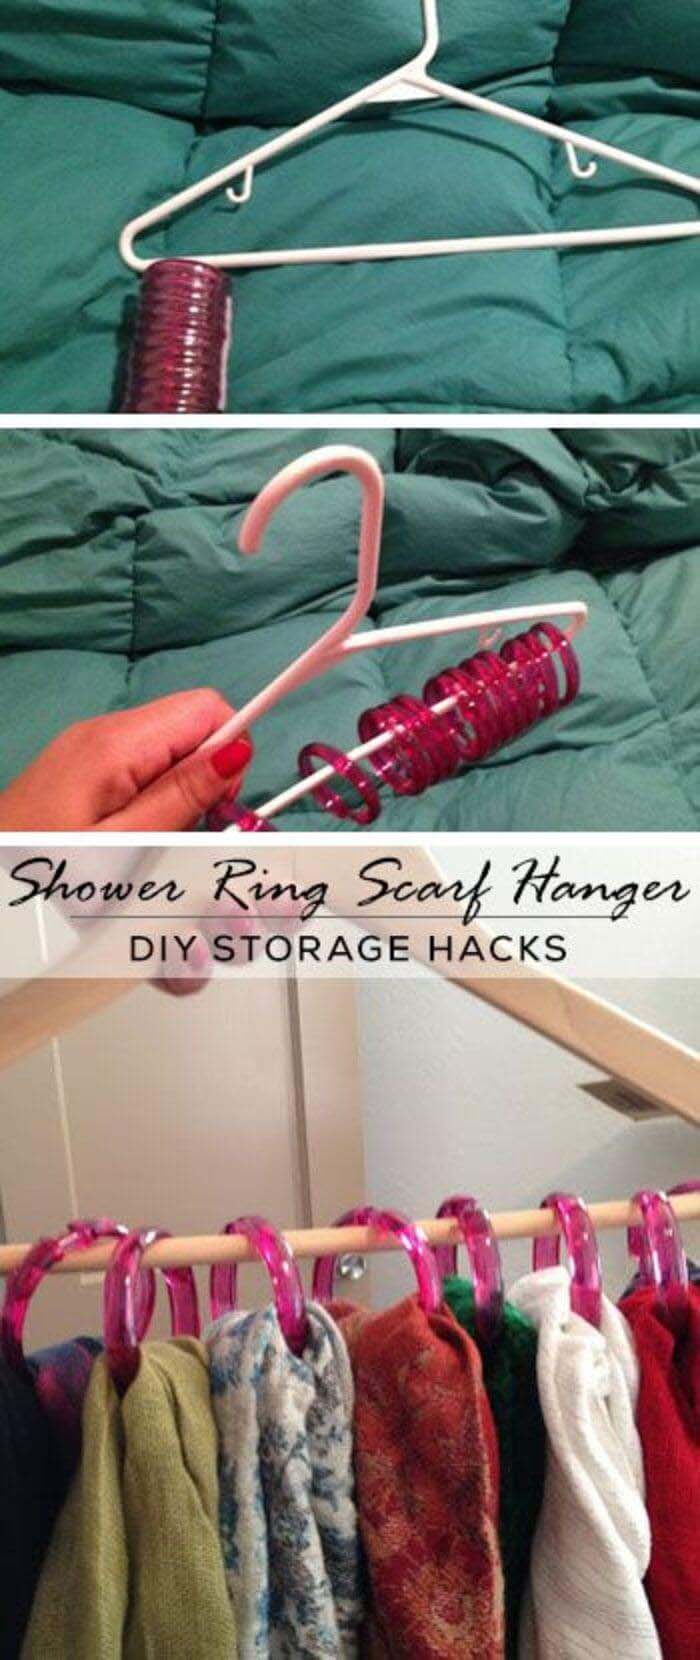 Easy One Hanger Scarf Rack #dollarstore #storage #organization #decorhomeideas